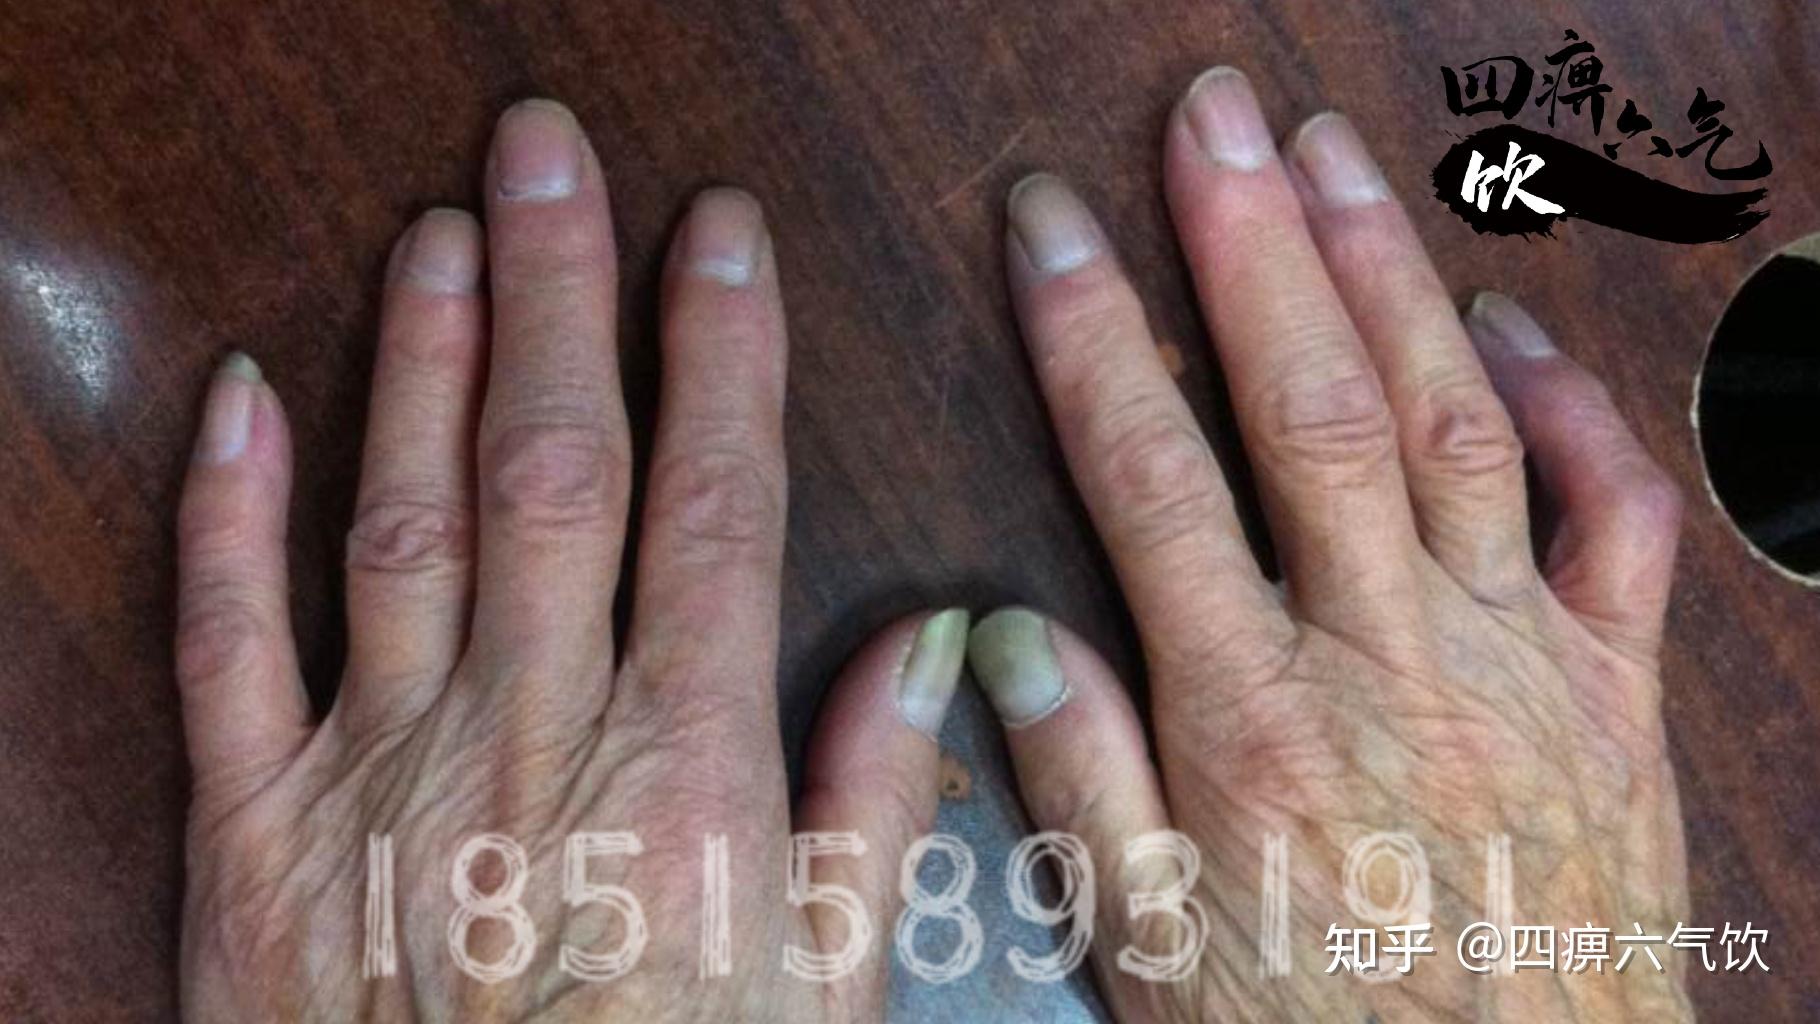 潍坊交通医院专家成功治愈雷诺氏症患者 张女士手部症状完全缓解 - 哔哩哔哩